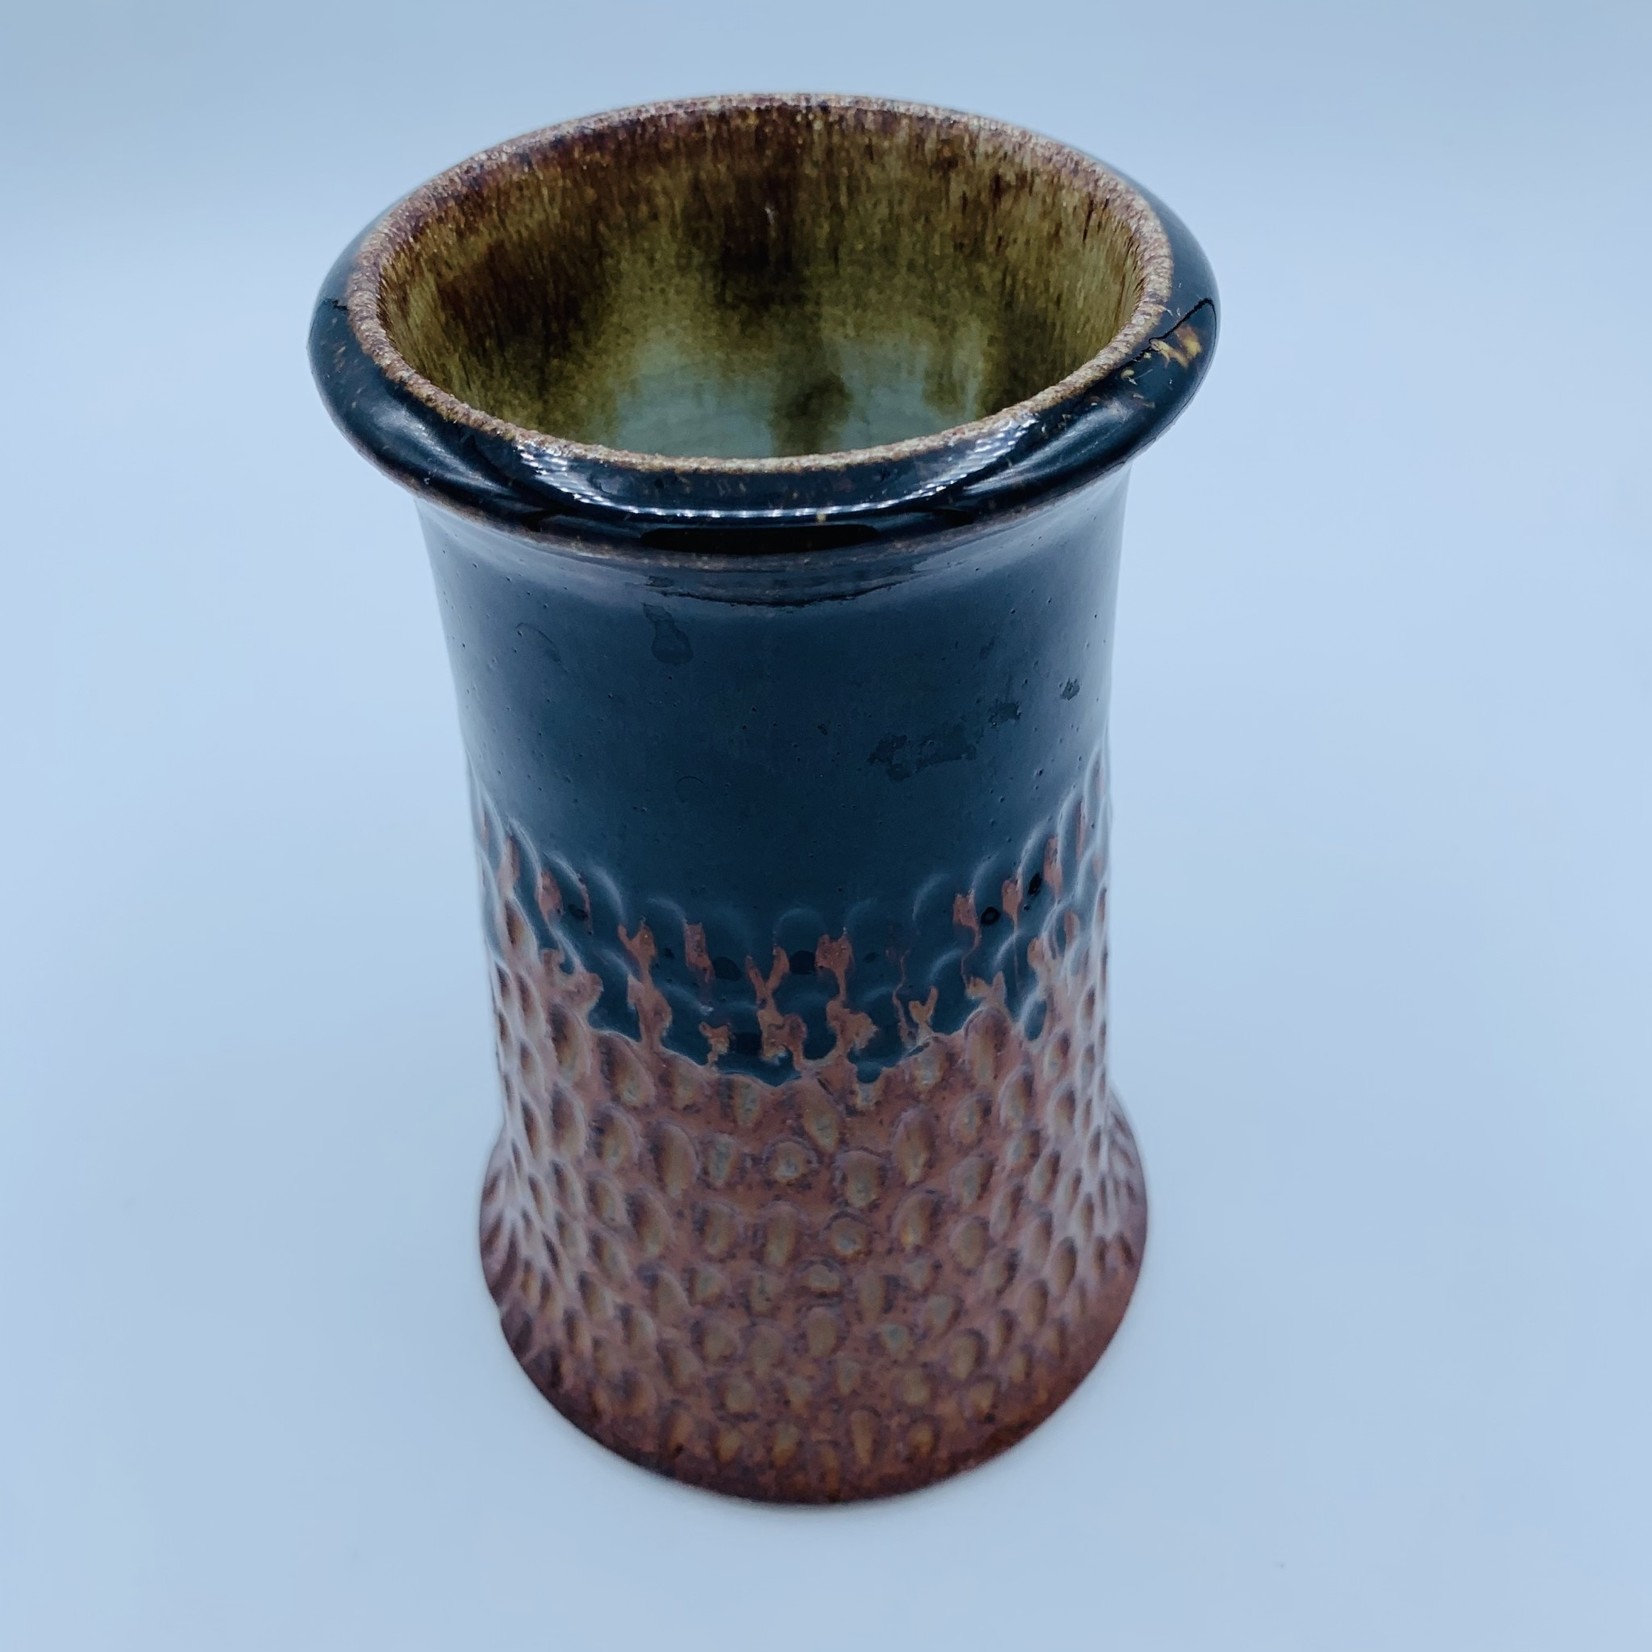 Clay in Mind Vase - Black Rim to Copper